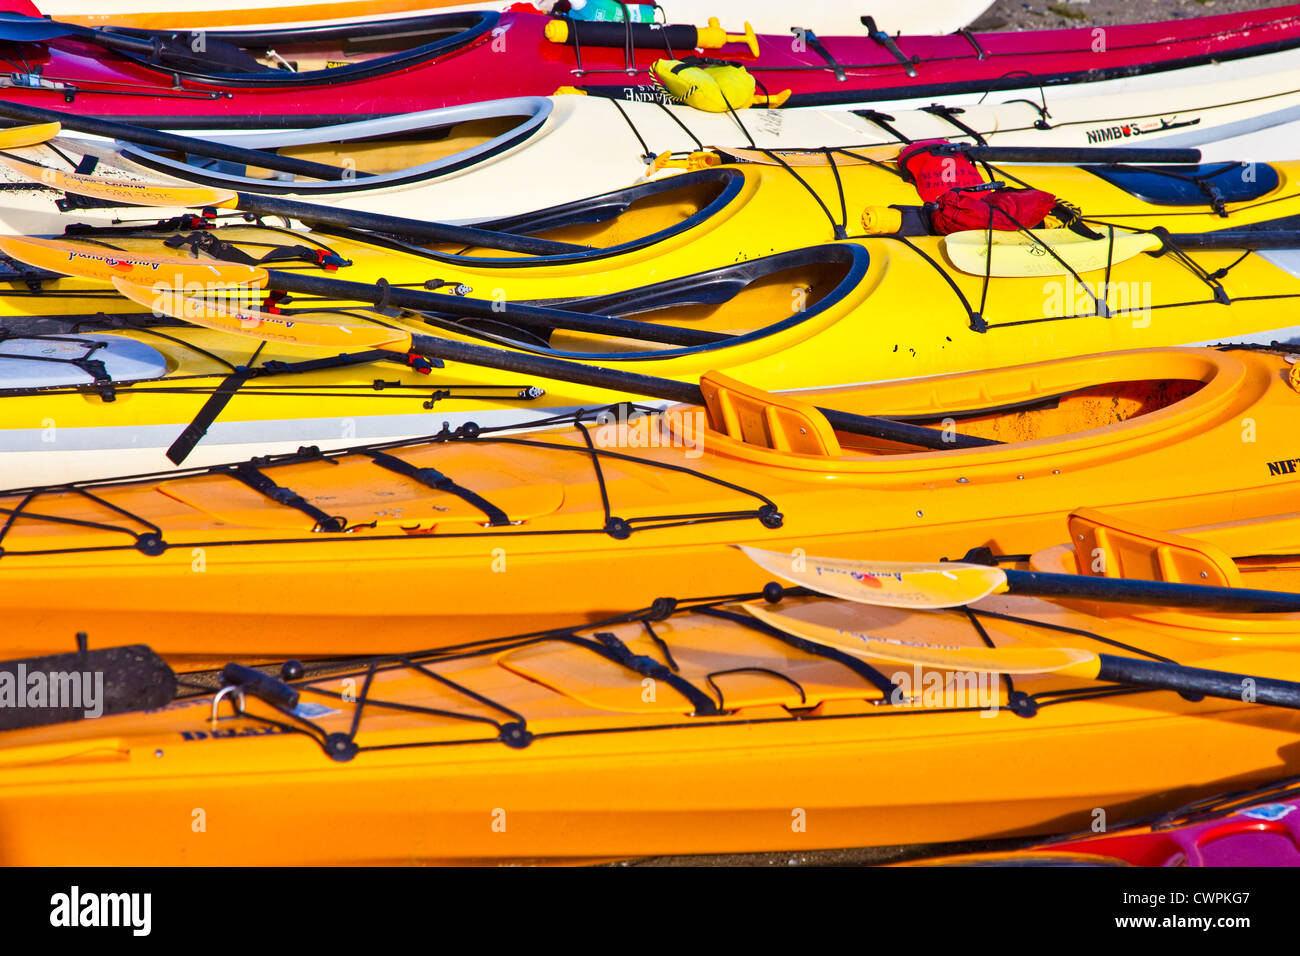 Image abstraite de kayaks alignés pour une collecte de fonds pour la recherche sur le cancer. Banque D'Images